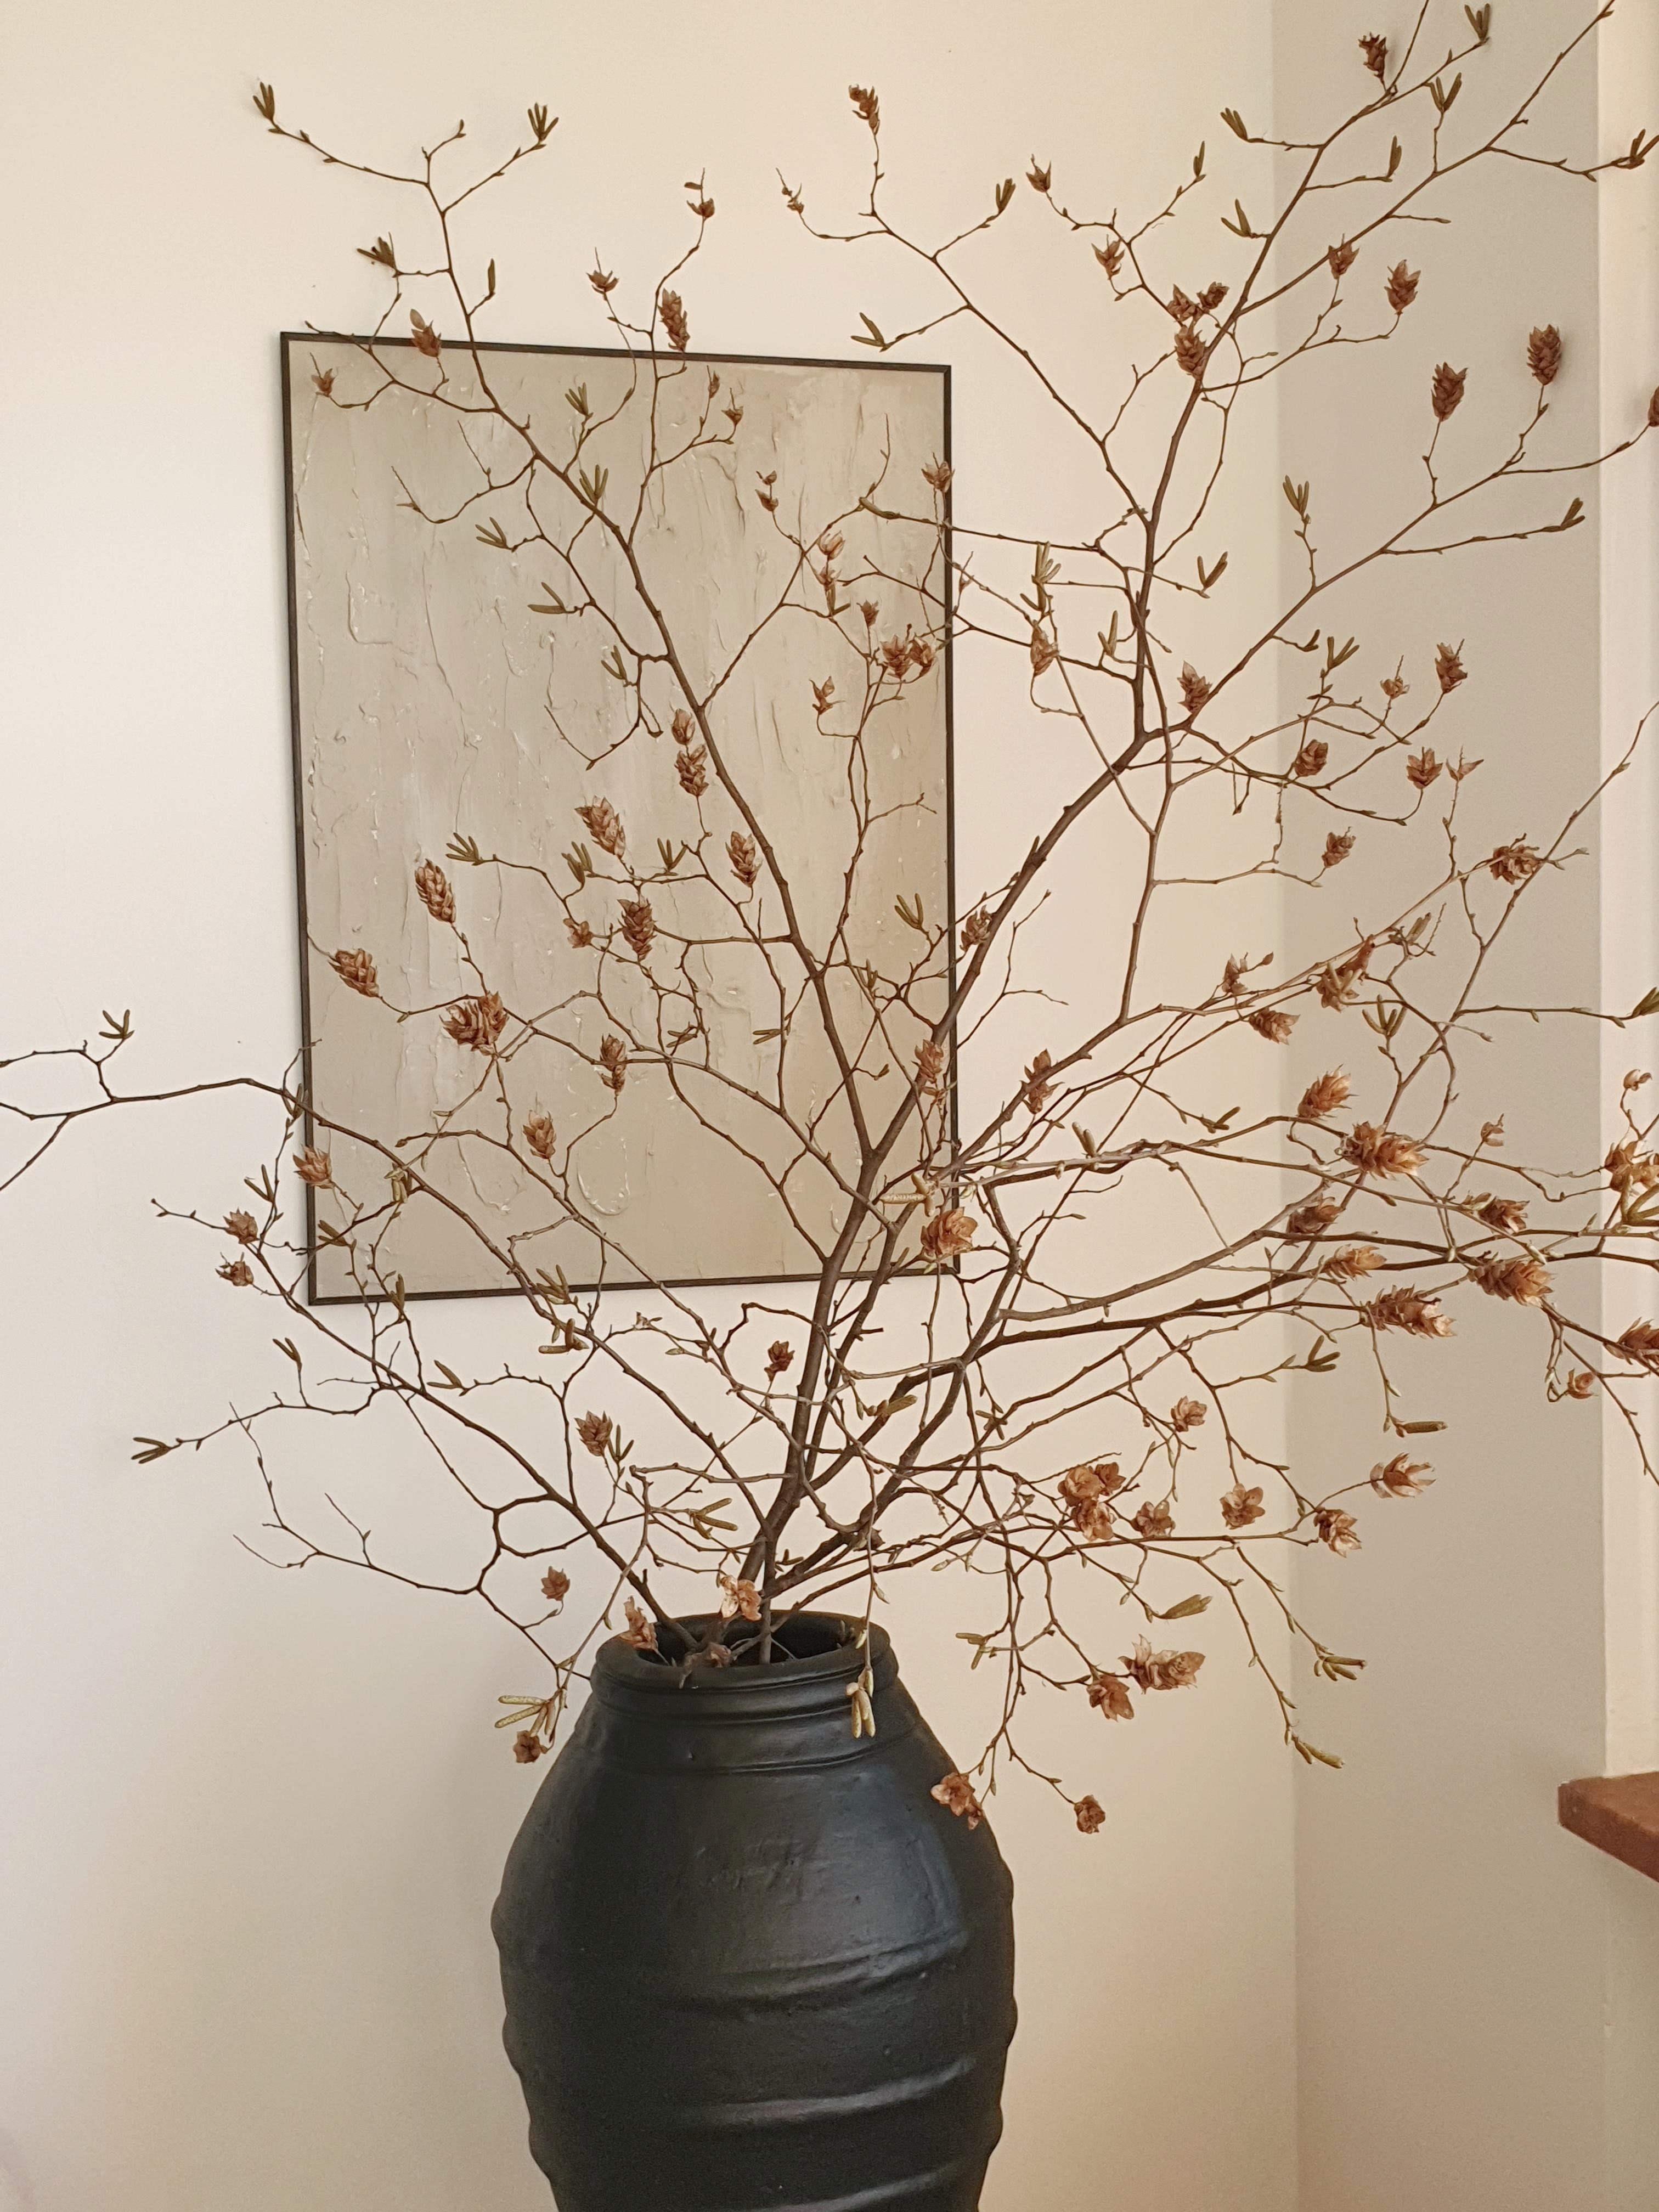 DIY Bild und Vase...
#skandistyle #diy #wohnzimmer #deko #winter  #couchliebt